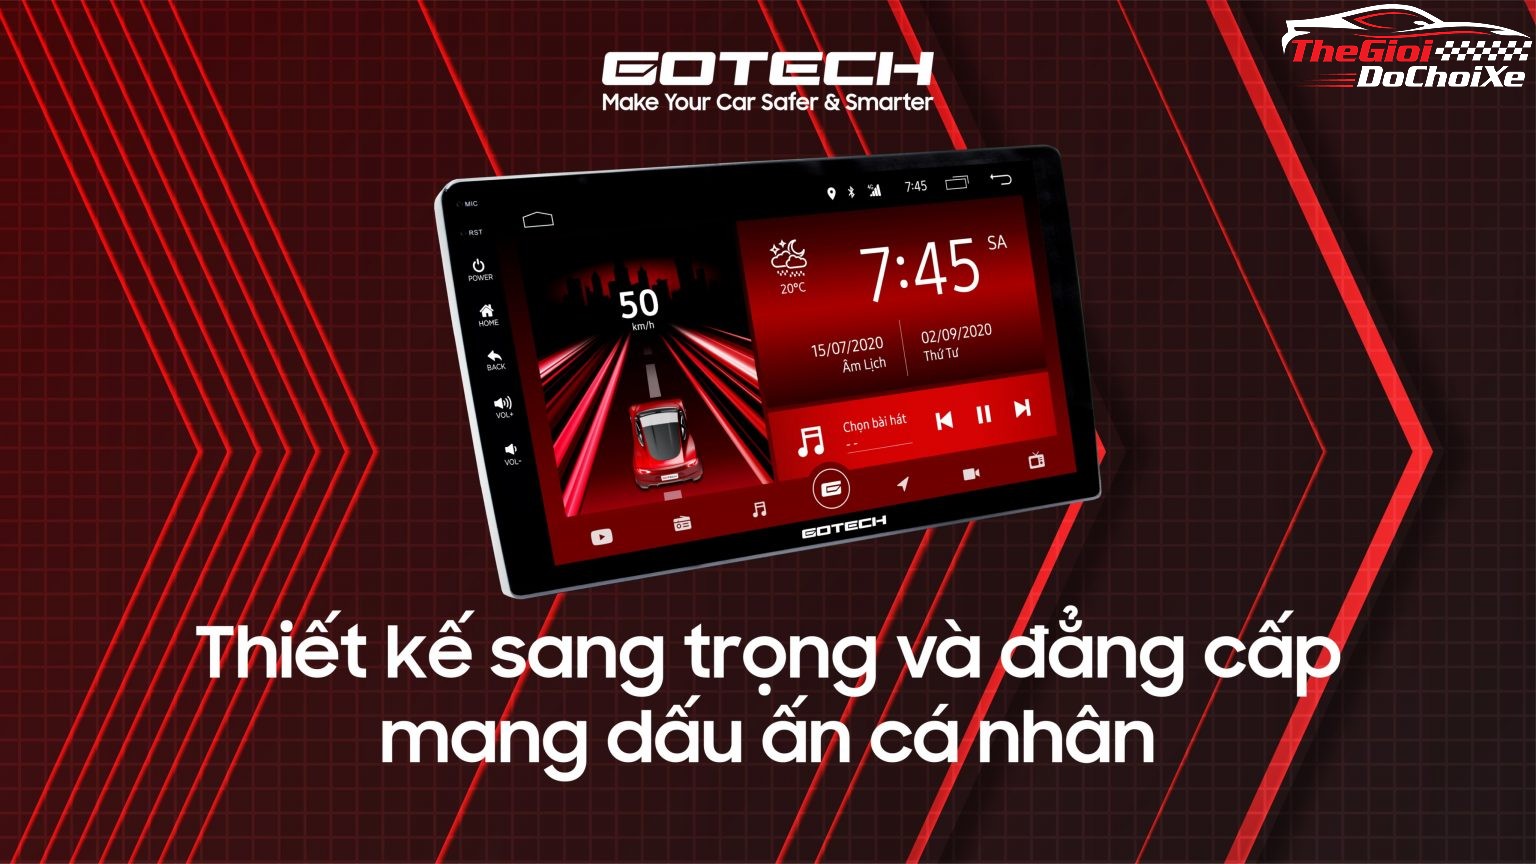 Bạn đang phân vân không biết nên chọn màn hình ô tô nào phù hợp và chất lượng? Hãy đến với Gotech và xem đánh giá sản phẩm của chúng tôi. Bạn sẽ tìm được màn hình ô tô tốt nhất cho mình.